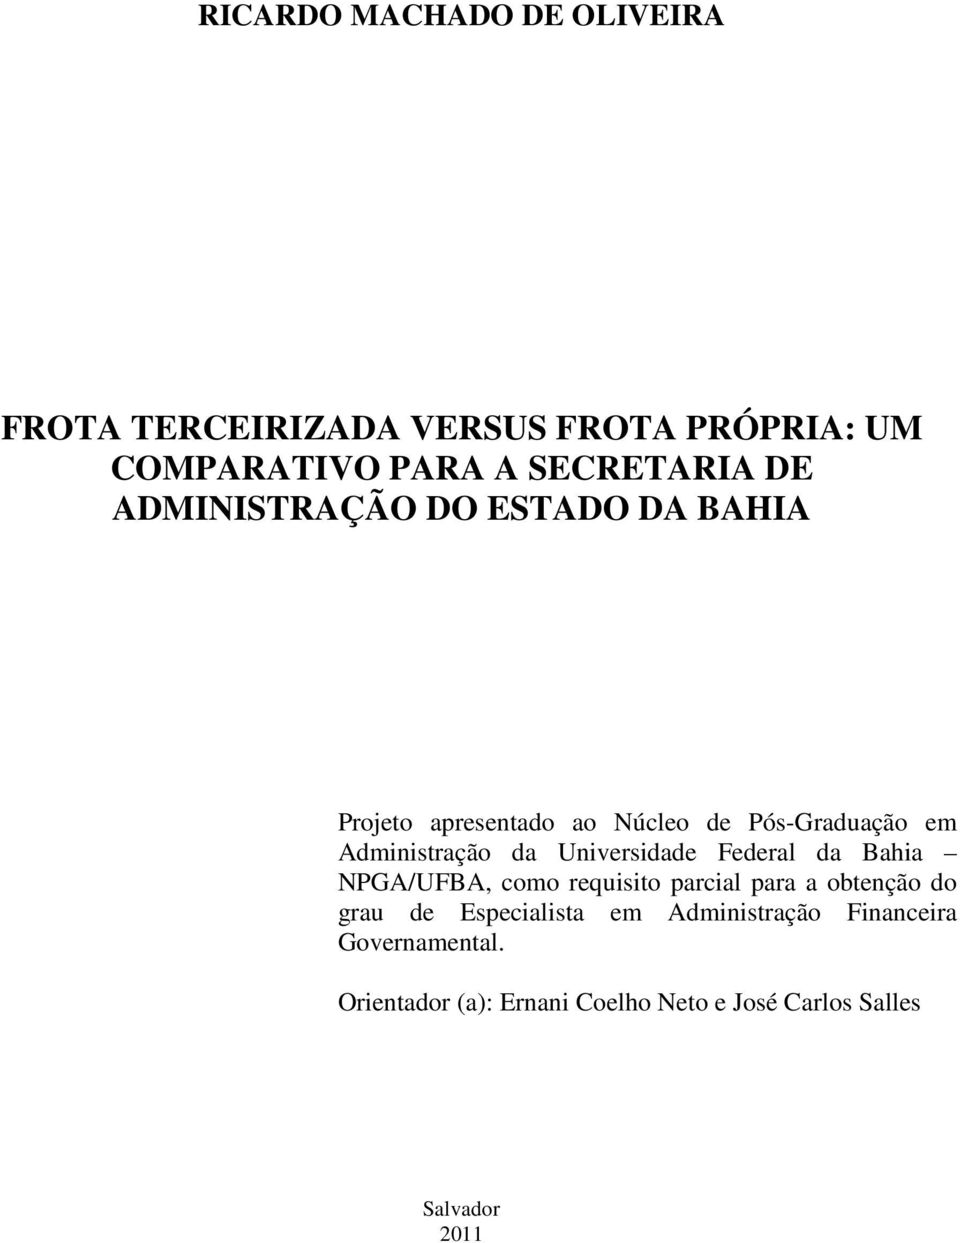 Universidade Federal da Bahia NPGA/UFBA, como requisito parcial para a obtenção do grau de Especialista